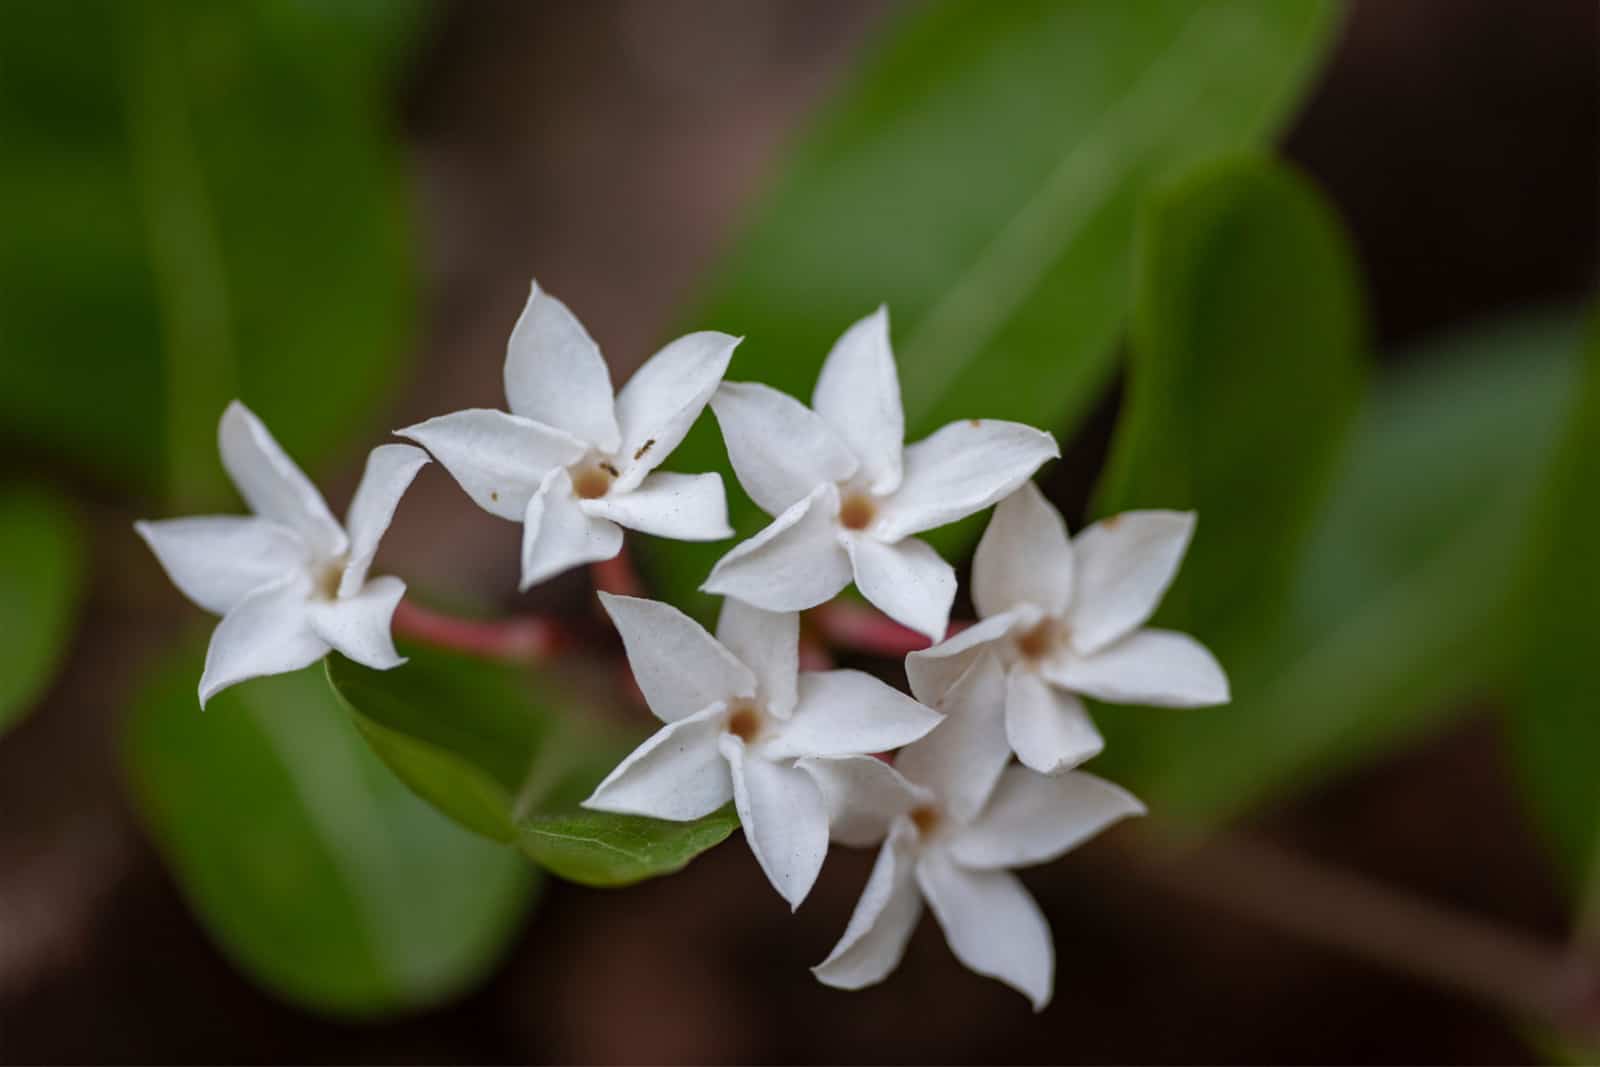 White flowers of the Abelia plant